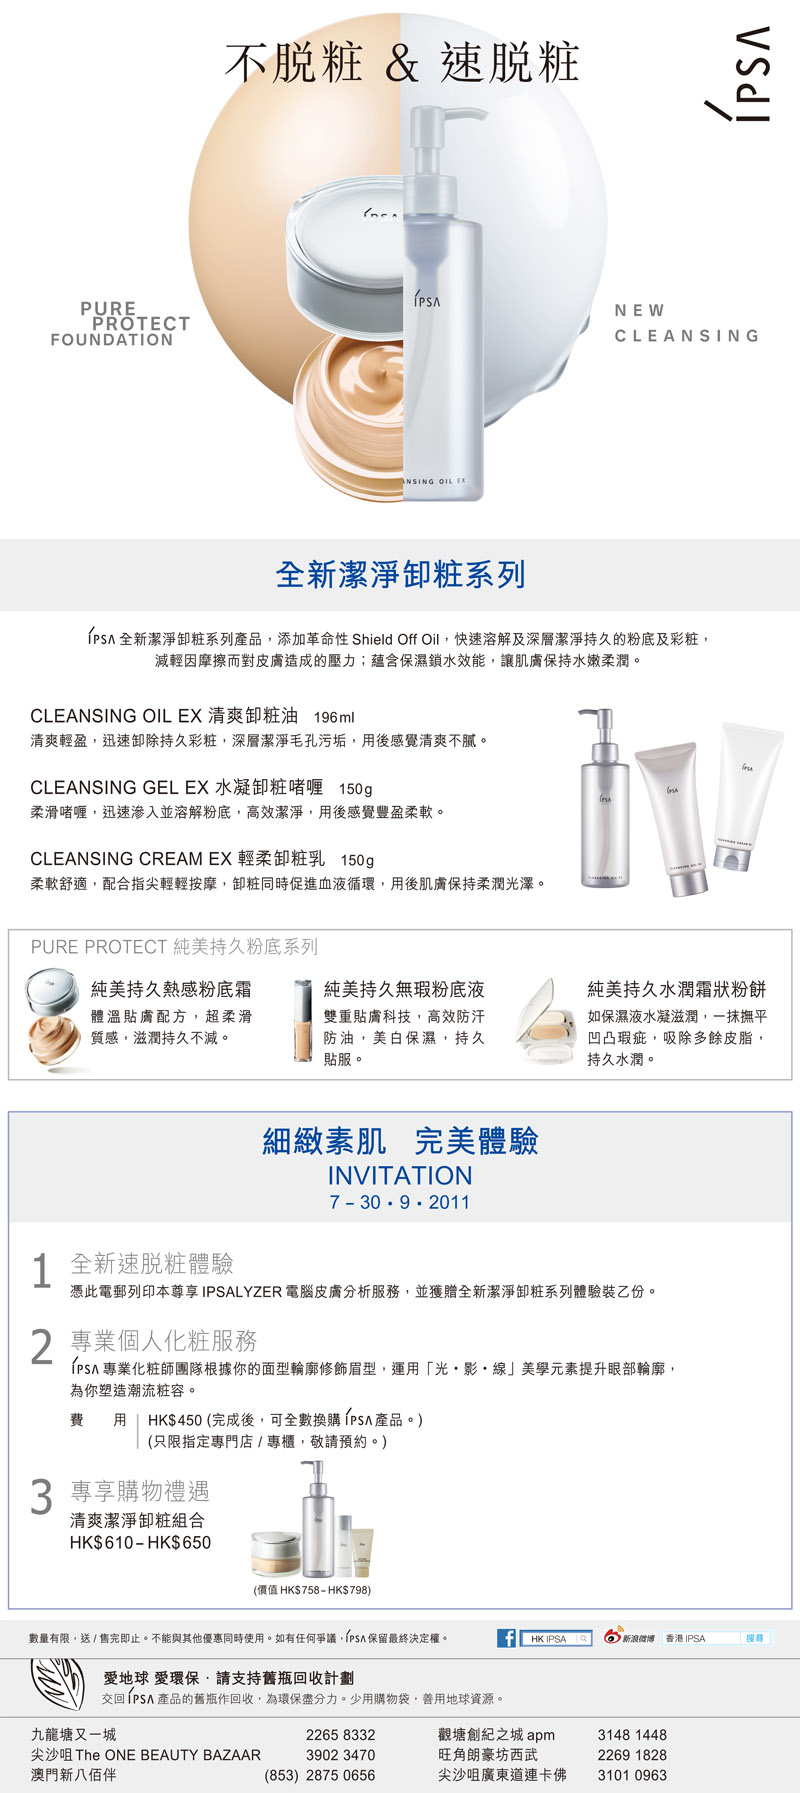 IPSA 全新潔淨卸妝系列試用裝及購物優惠(至11年9月30日)圖片2